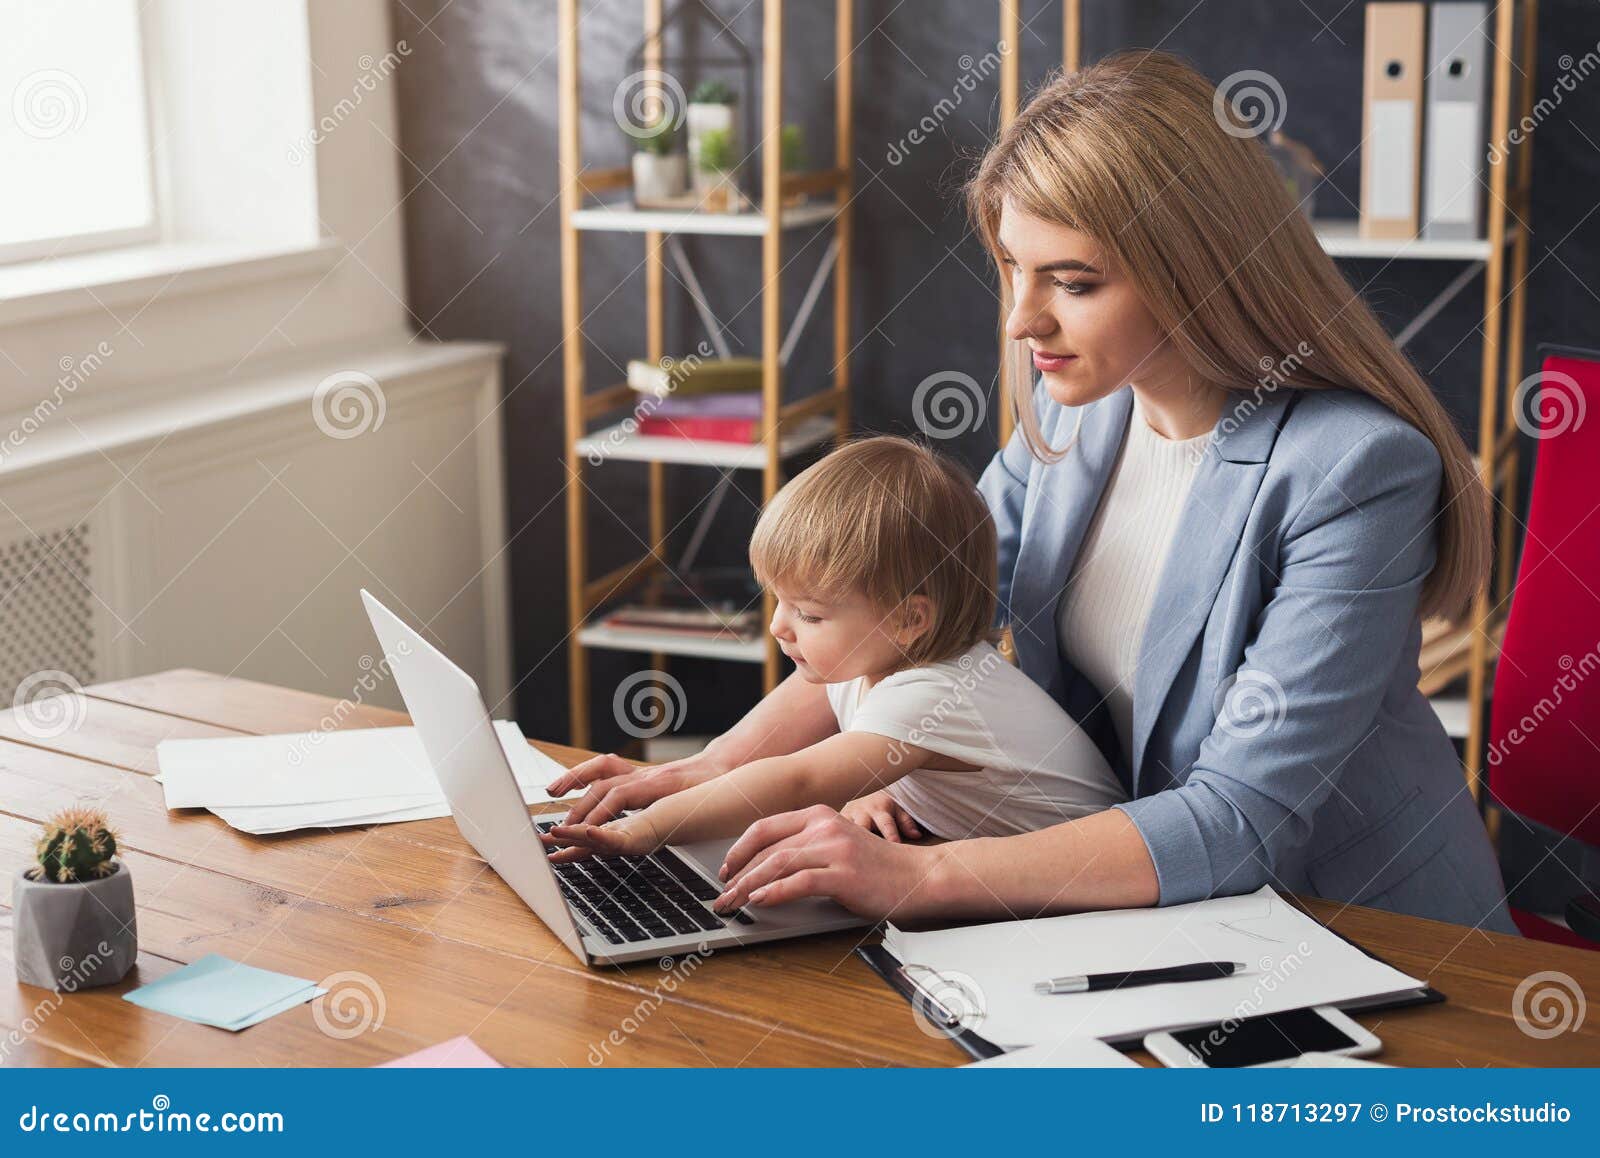 Мама на работе на английском. Молодая мама работает. Социальные ожидания от молодой работающей мамы.